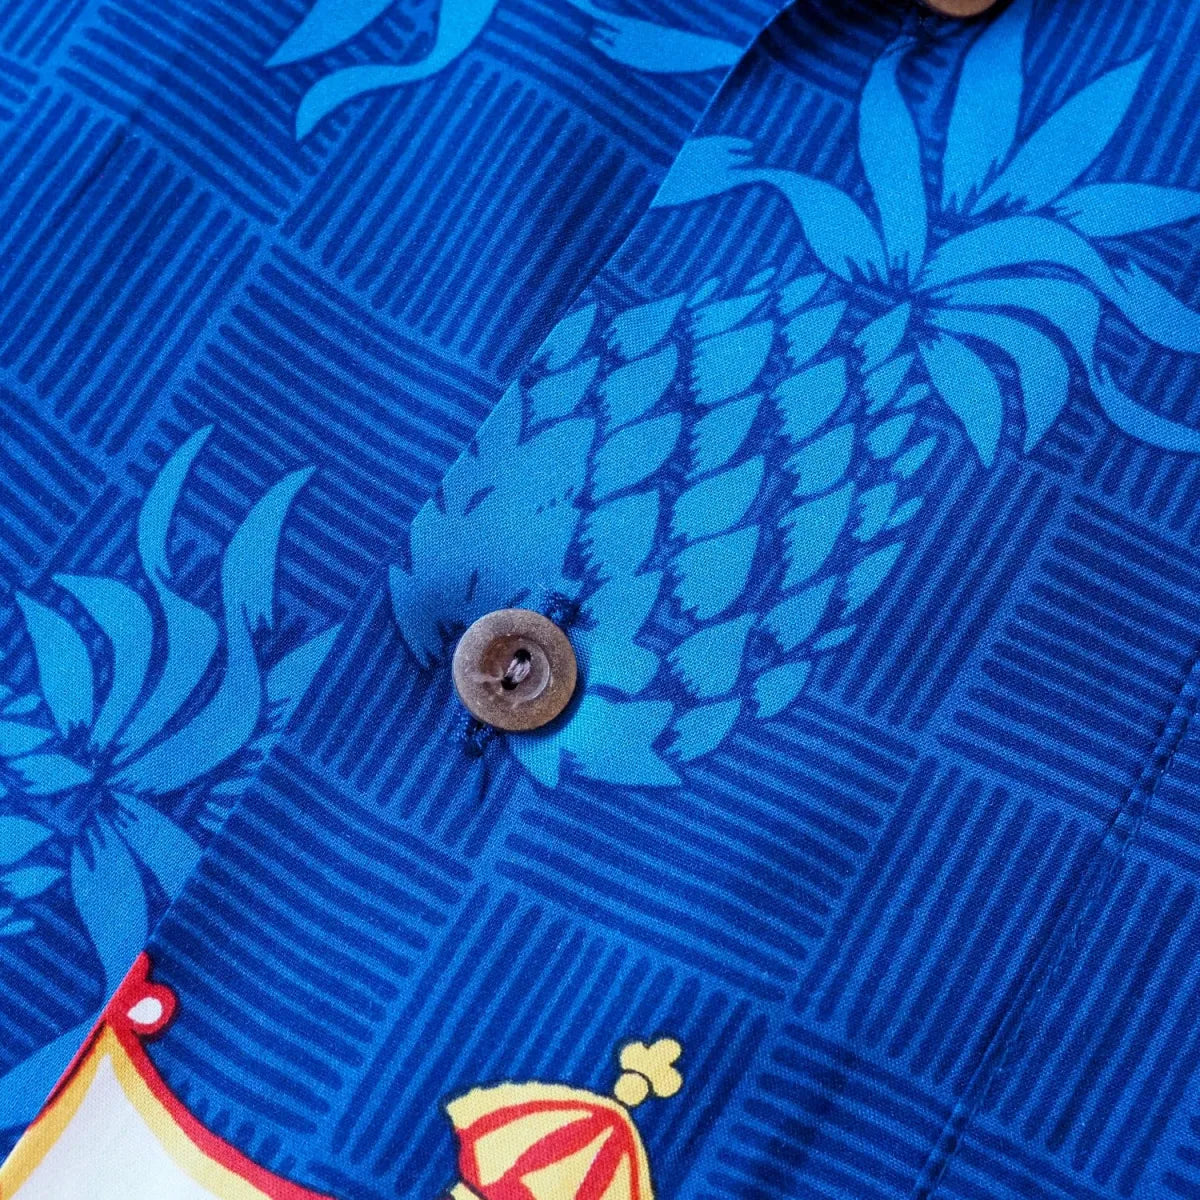 Crest blue hawaiian aloha rayon shirt